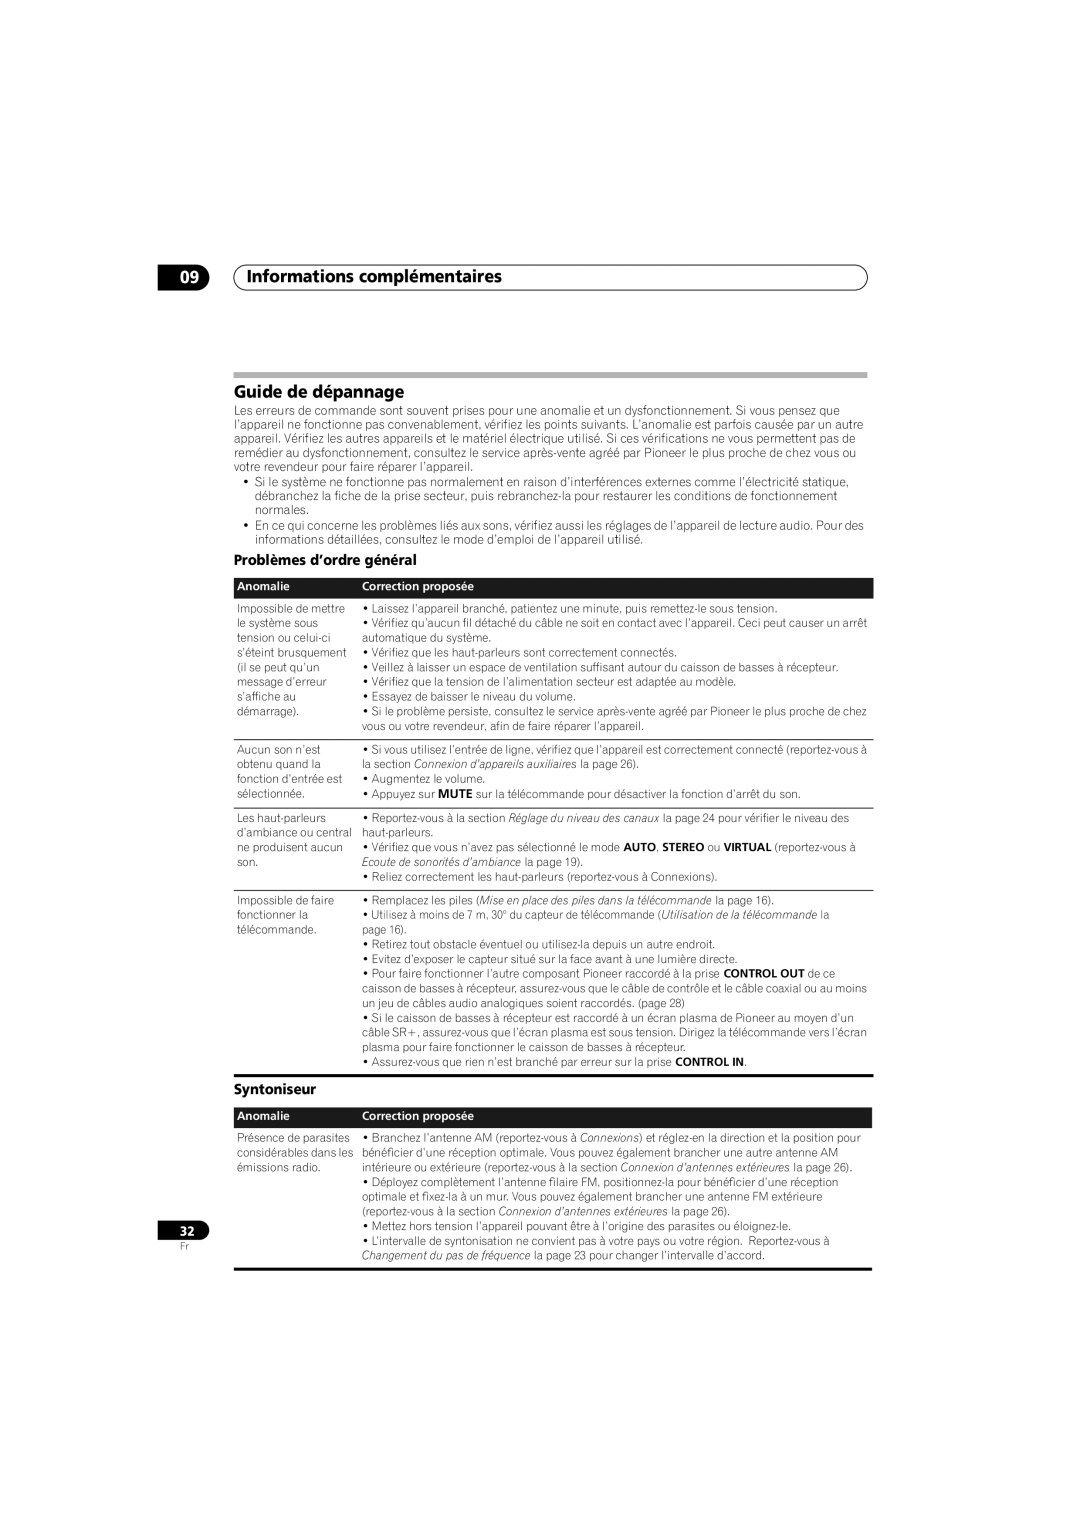 Pioneer HTS-570 09Informations complémentaires Guide de dépannage, Problèmes d’ordre général, Syntoniseur, Anomalie 